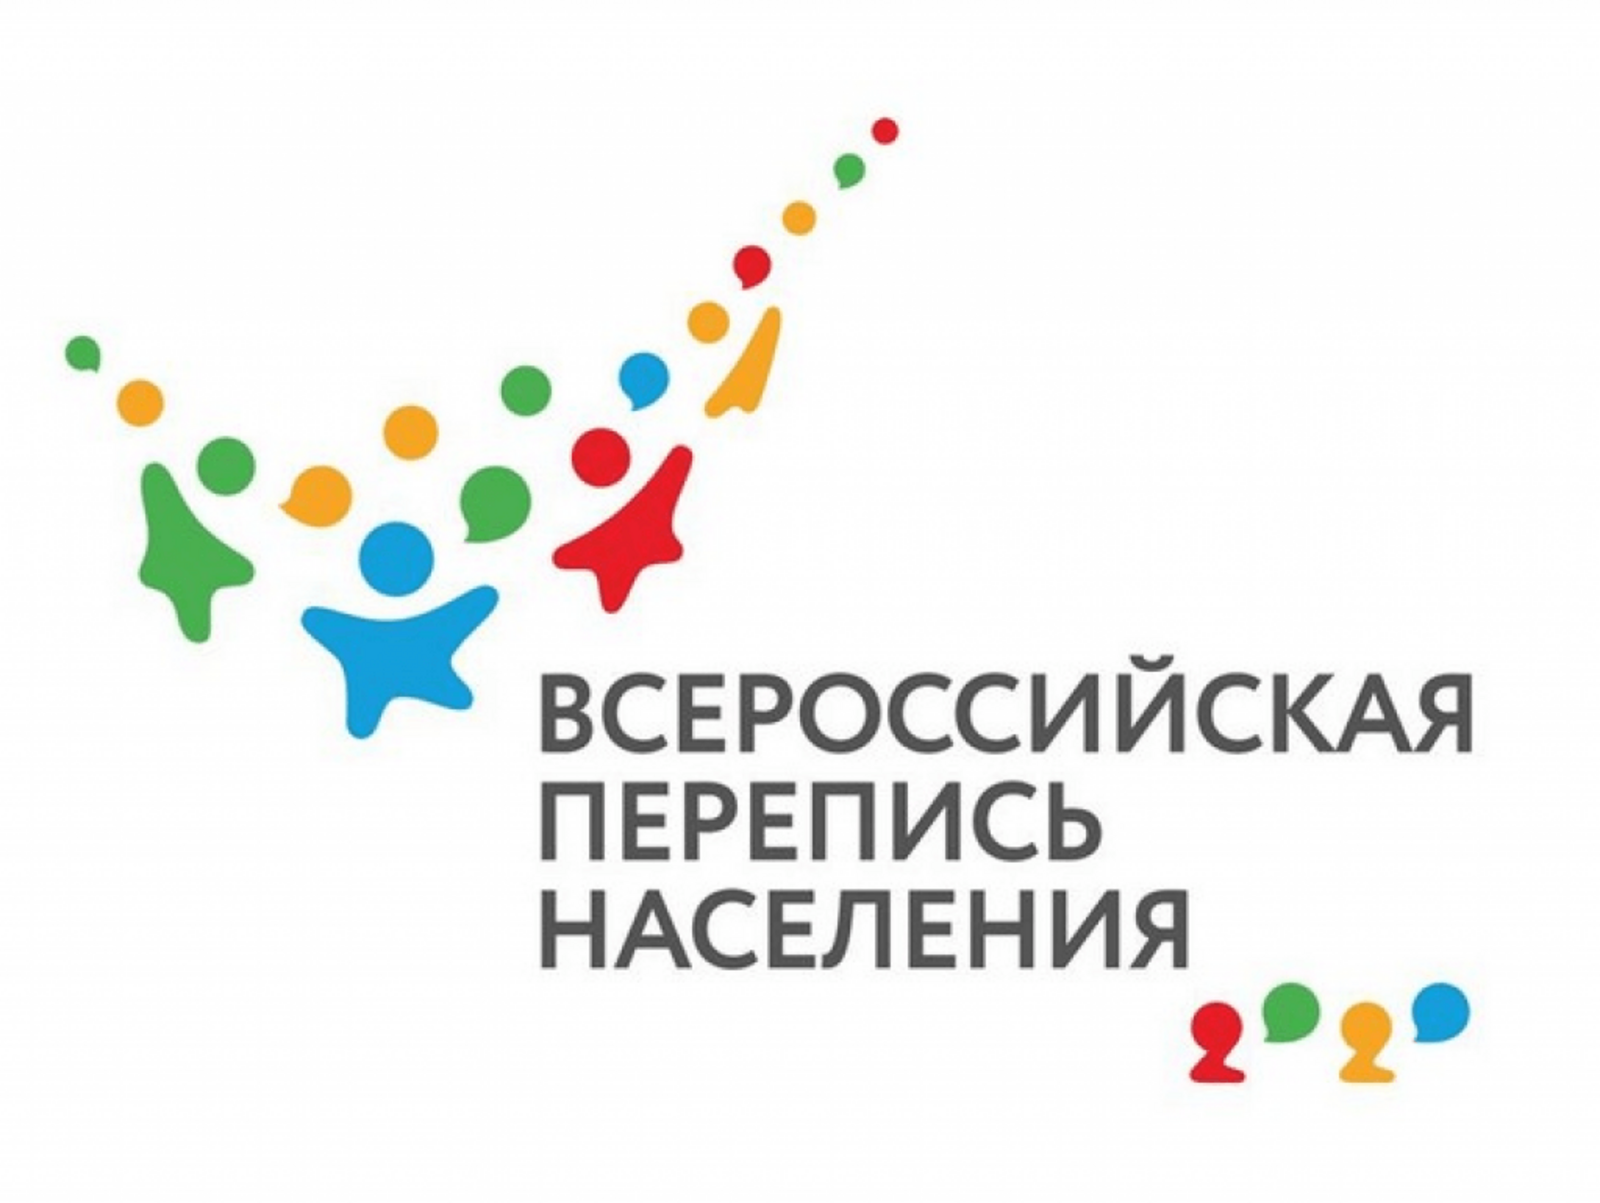 МФЦ Республики Башкортостан примет участие во Всероссийской переписи населения